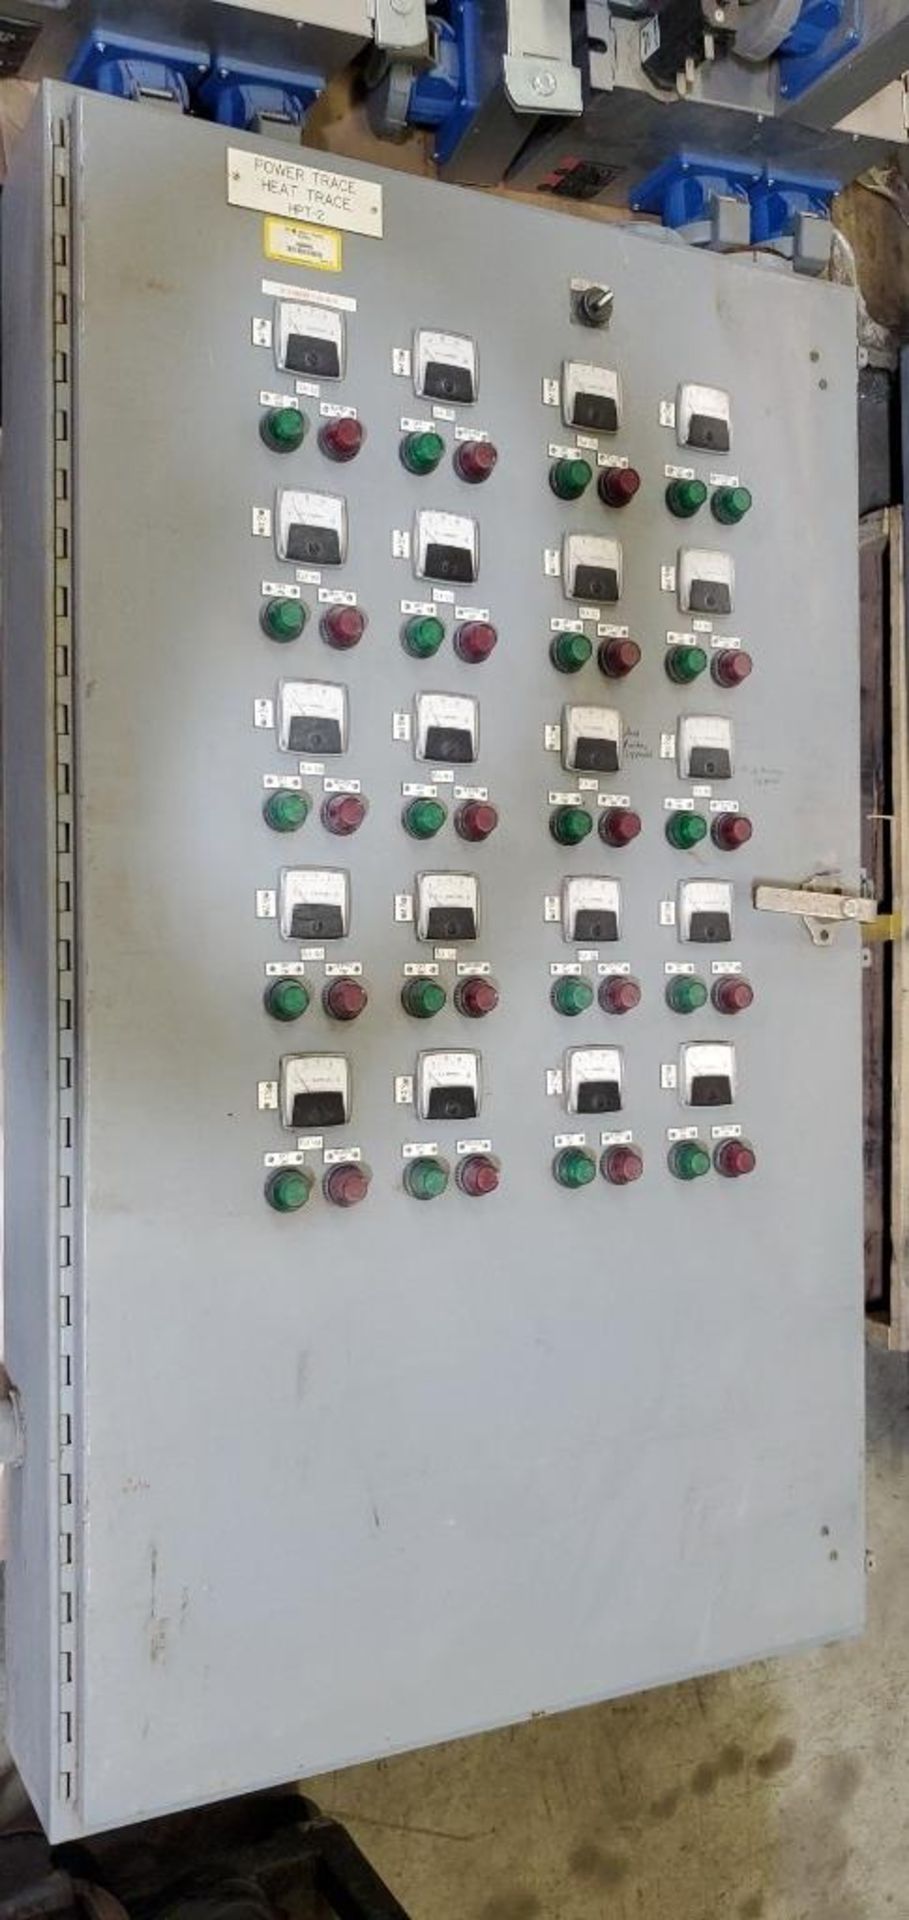 Hoffman Power/Heat Trace Cabinet